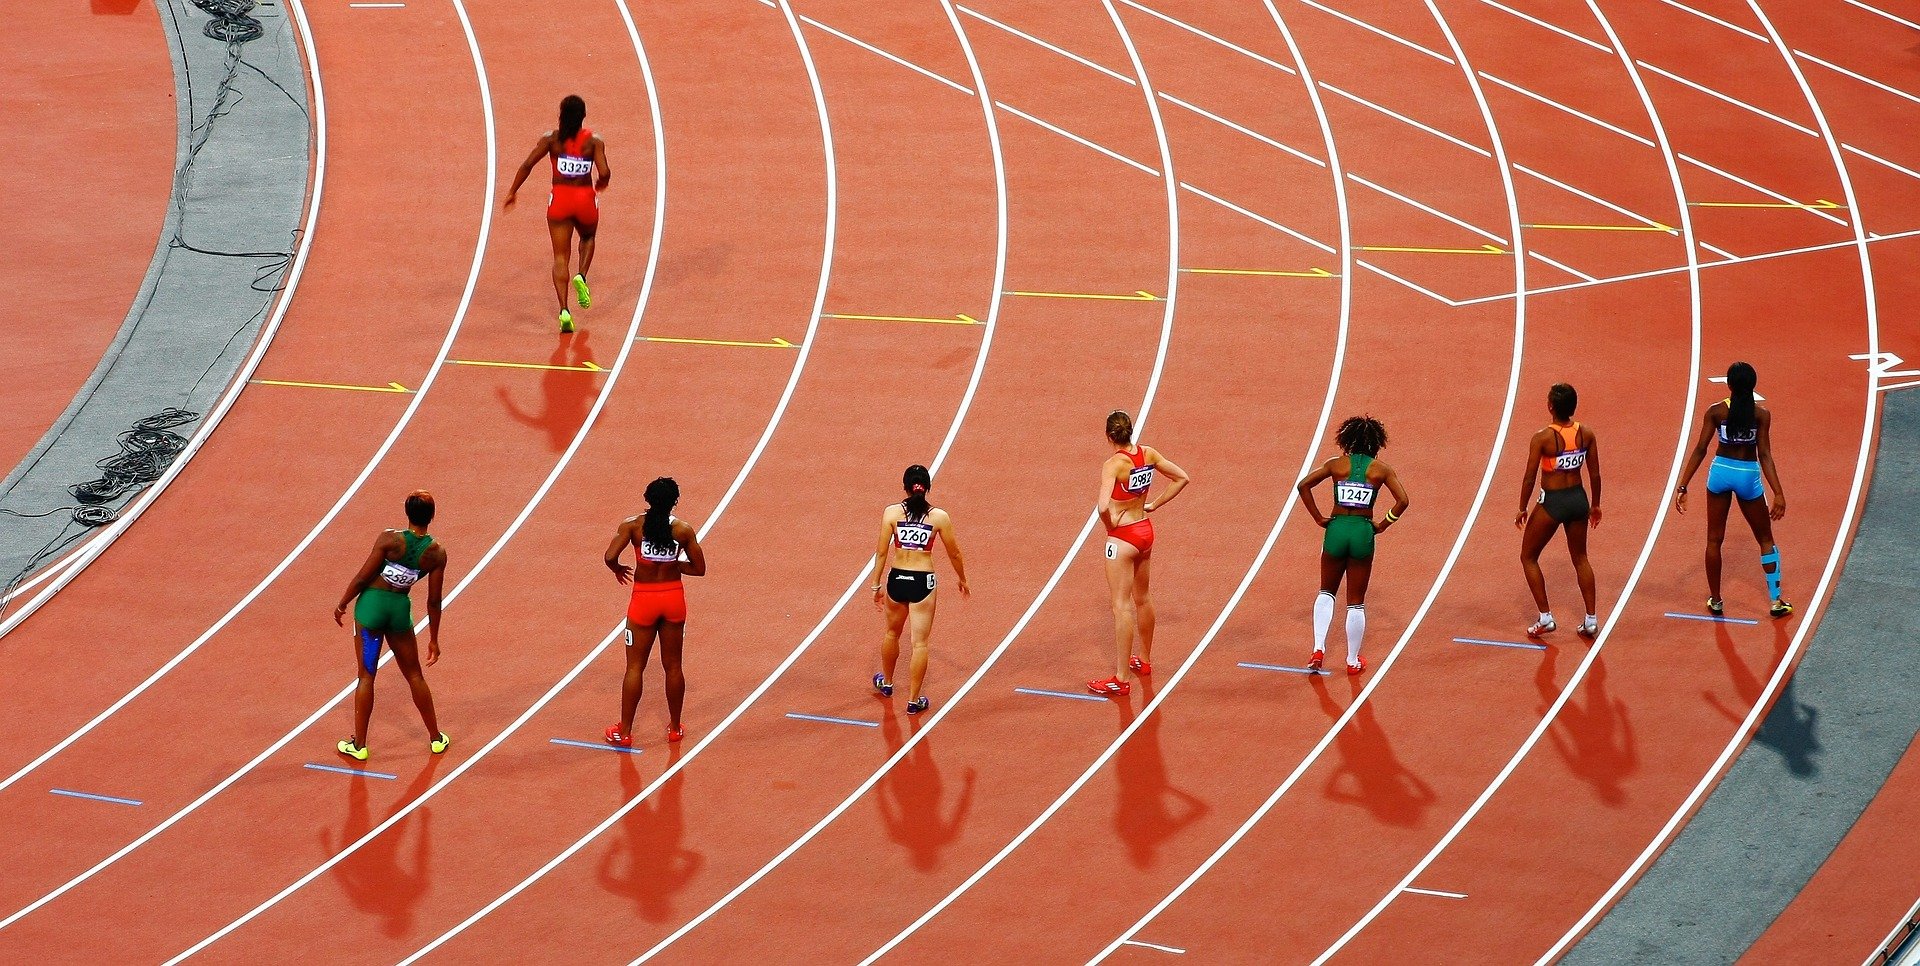 La participación de la mujer en el deporte es un indicador del desarrollo  igualitario en el mundo, según un estudio de la UMU - UCC+I